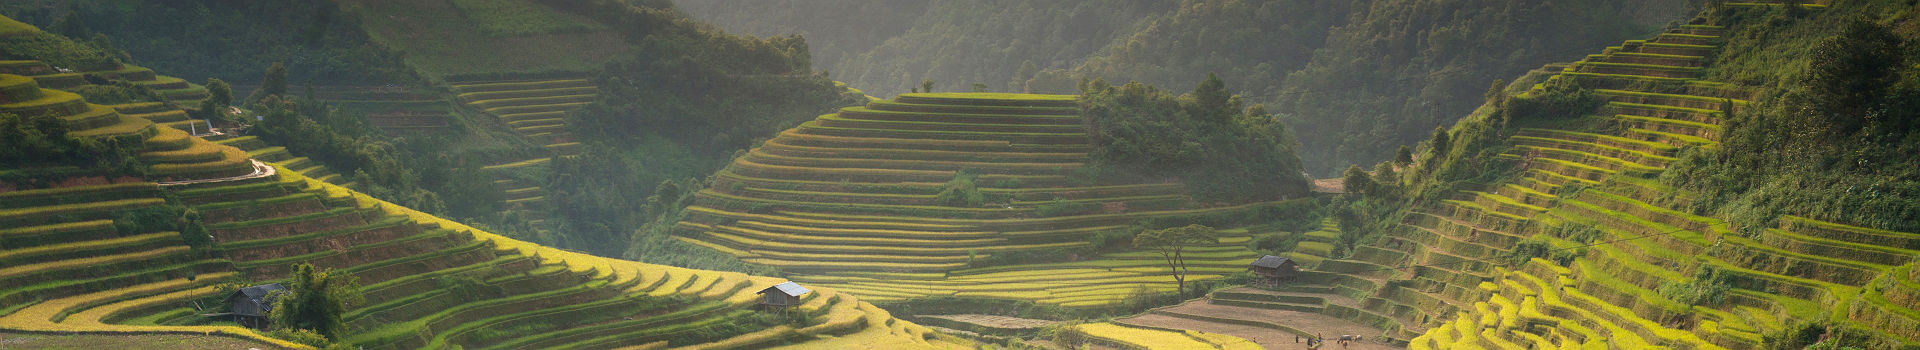 Rizières en terrasse dans la province de Lào Cai - Vietnam